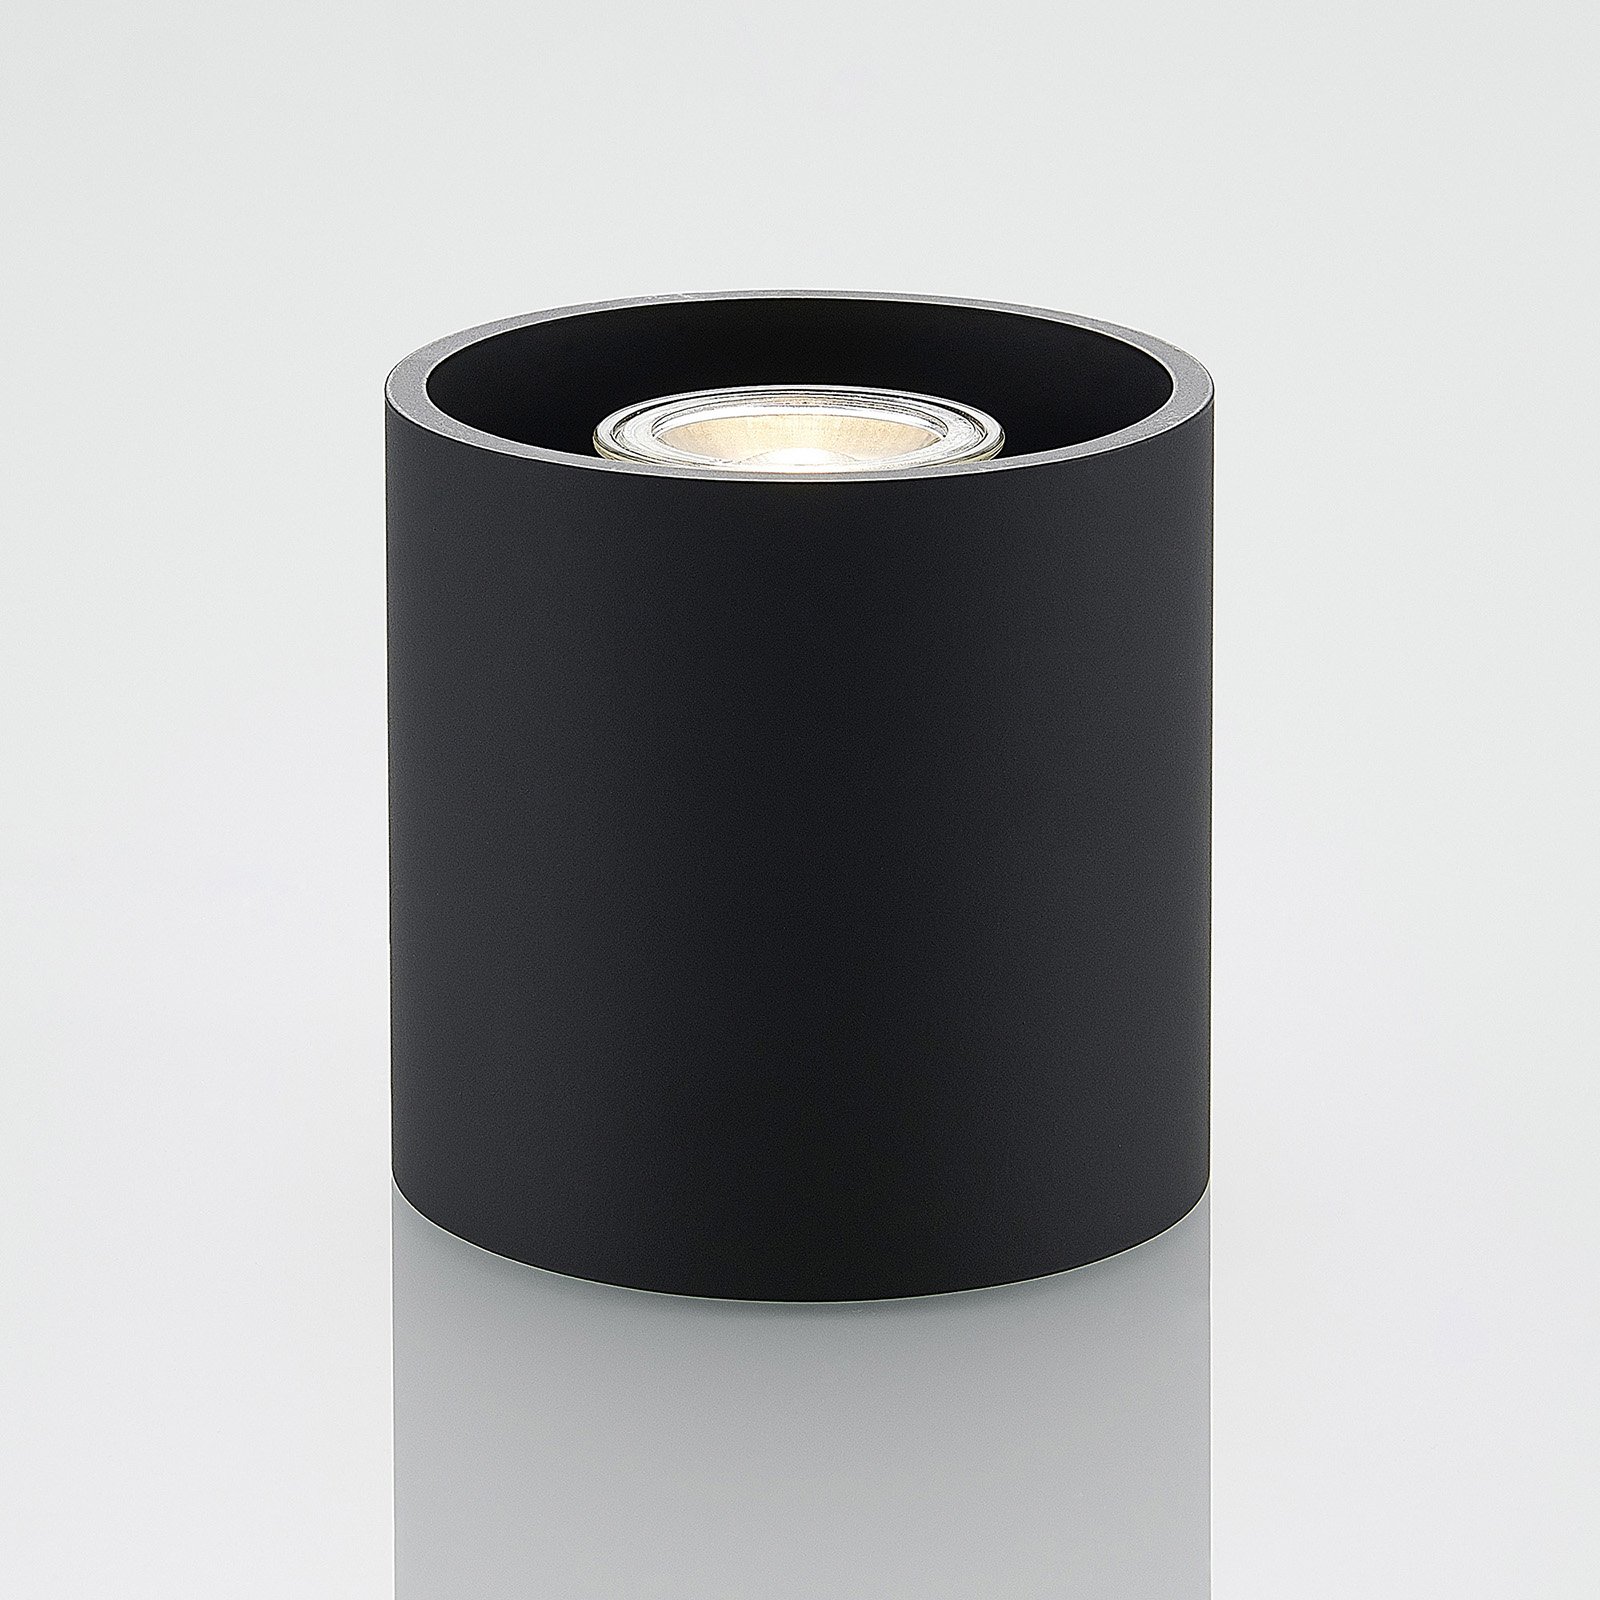 Lindby Parvin aluminijska svjetiljka, okrugla, crna